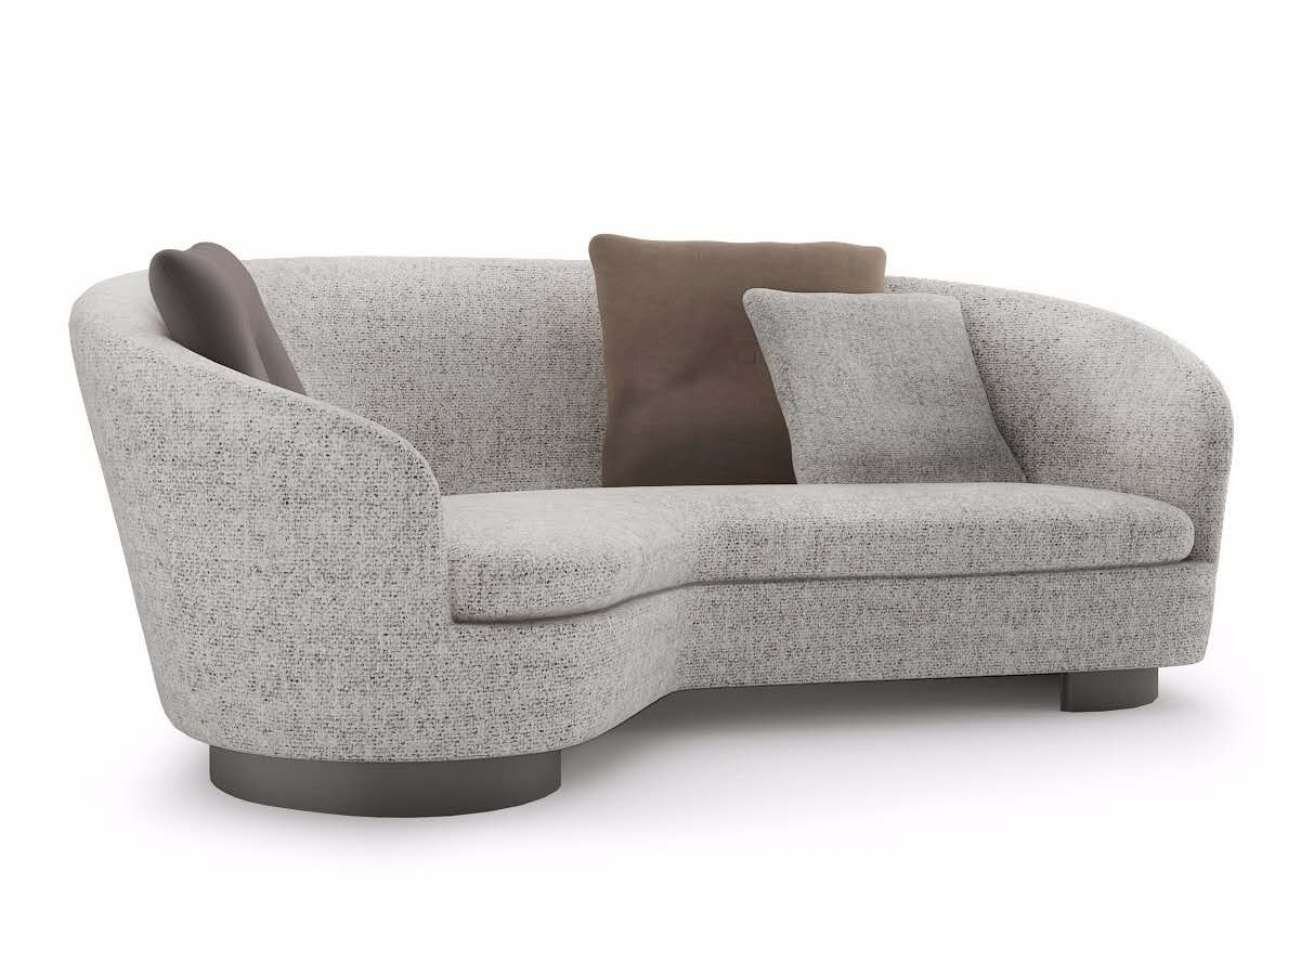 JVmoebel 3-Sitzer Grauer Dreisitzer Couch Polster Design Sofa 3er Sitz Sofa, Made in Europe